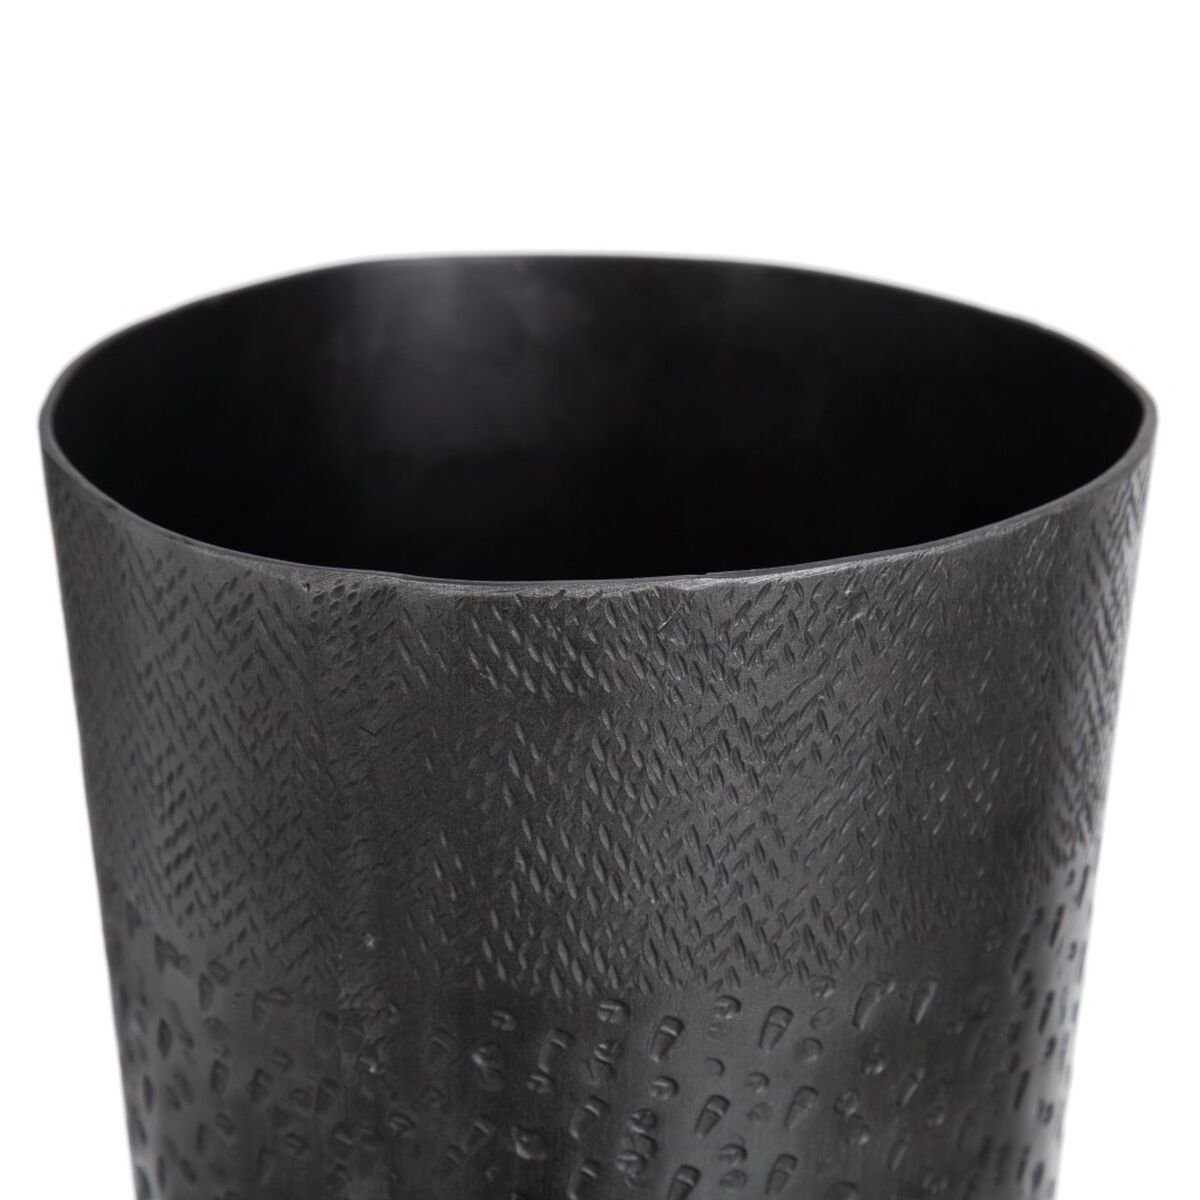 Bigbuy x Metall Dekovase Vase cm 15 31 x 15 Grau